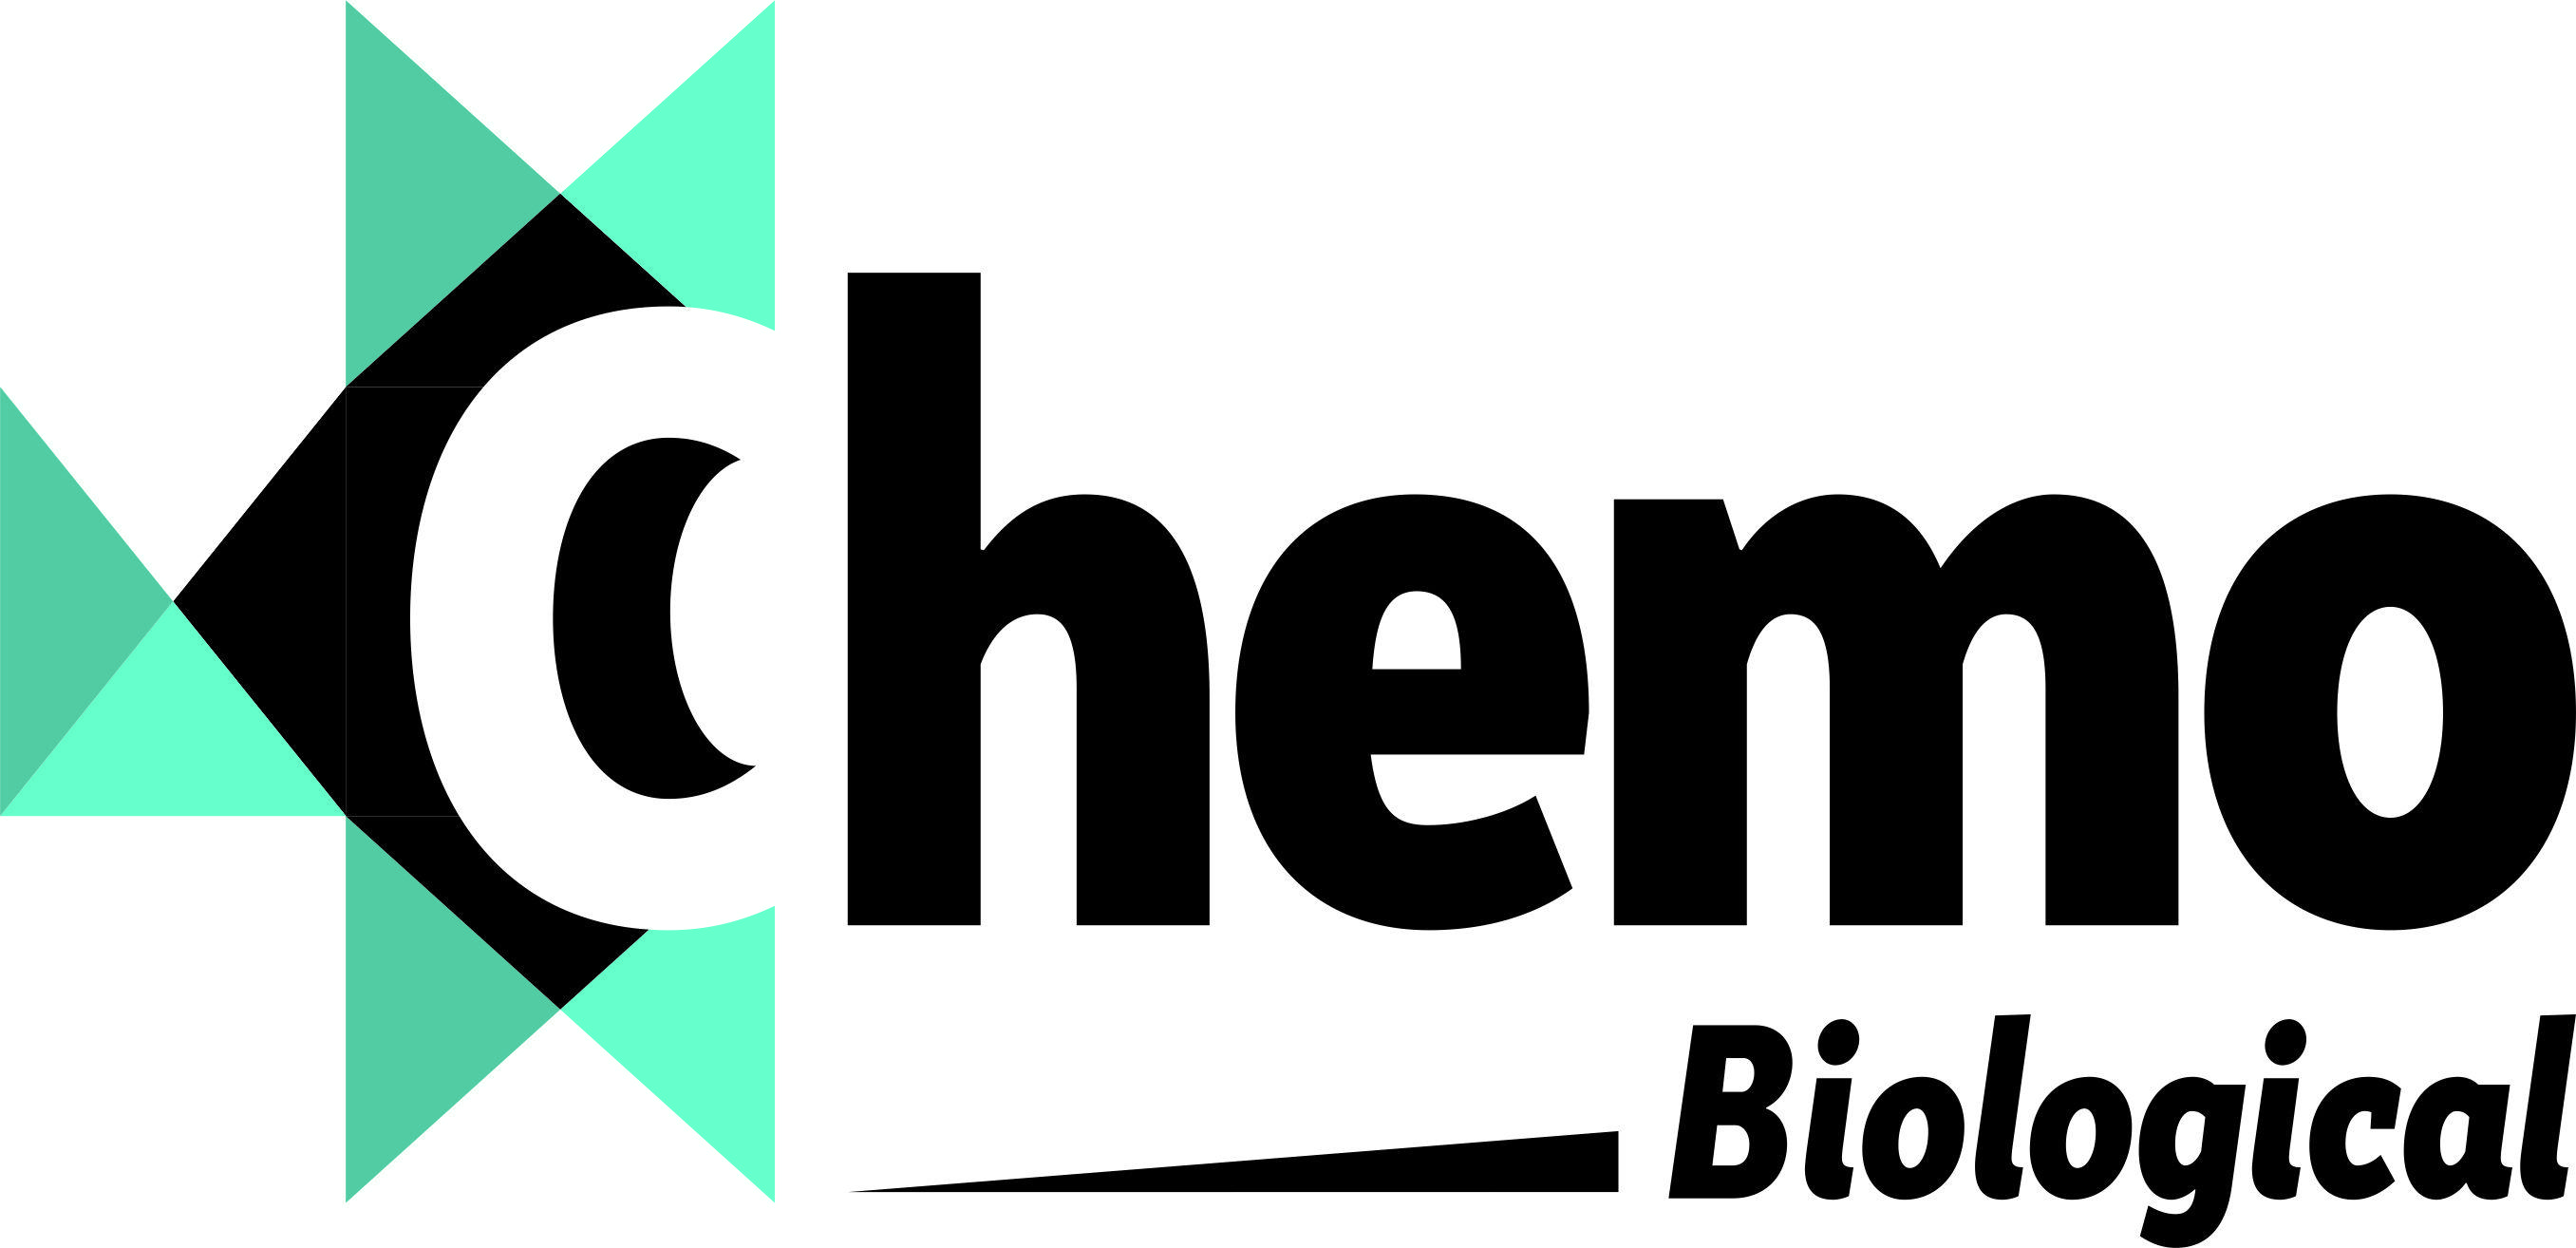 Chemo Logo - Chemo Biological - 78359 in New Delhi, India